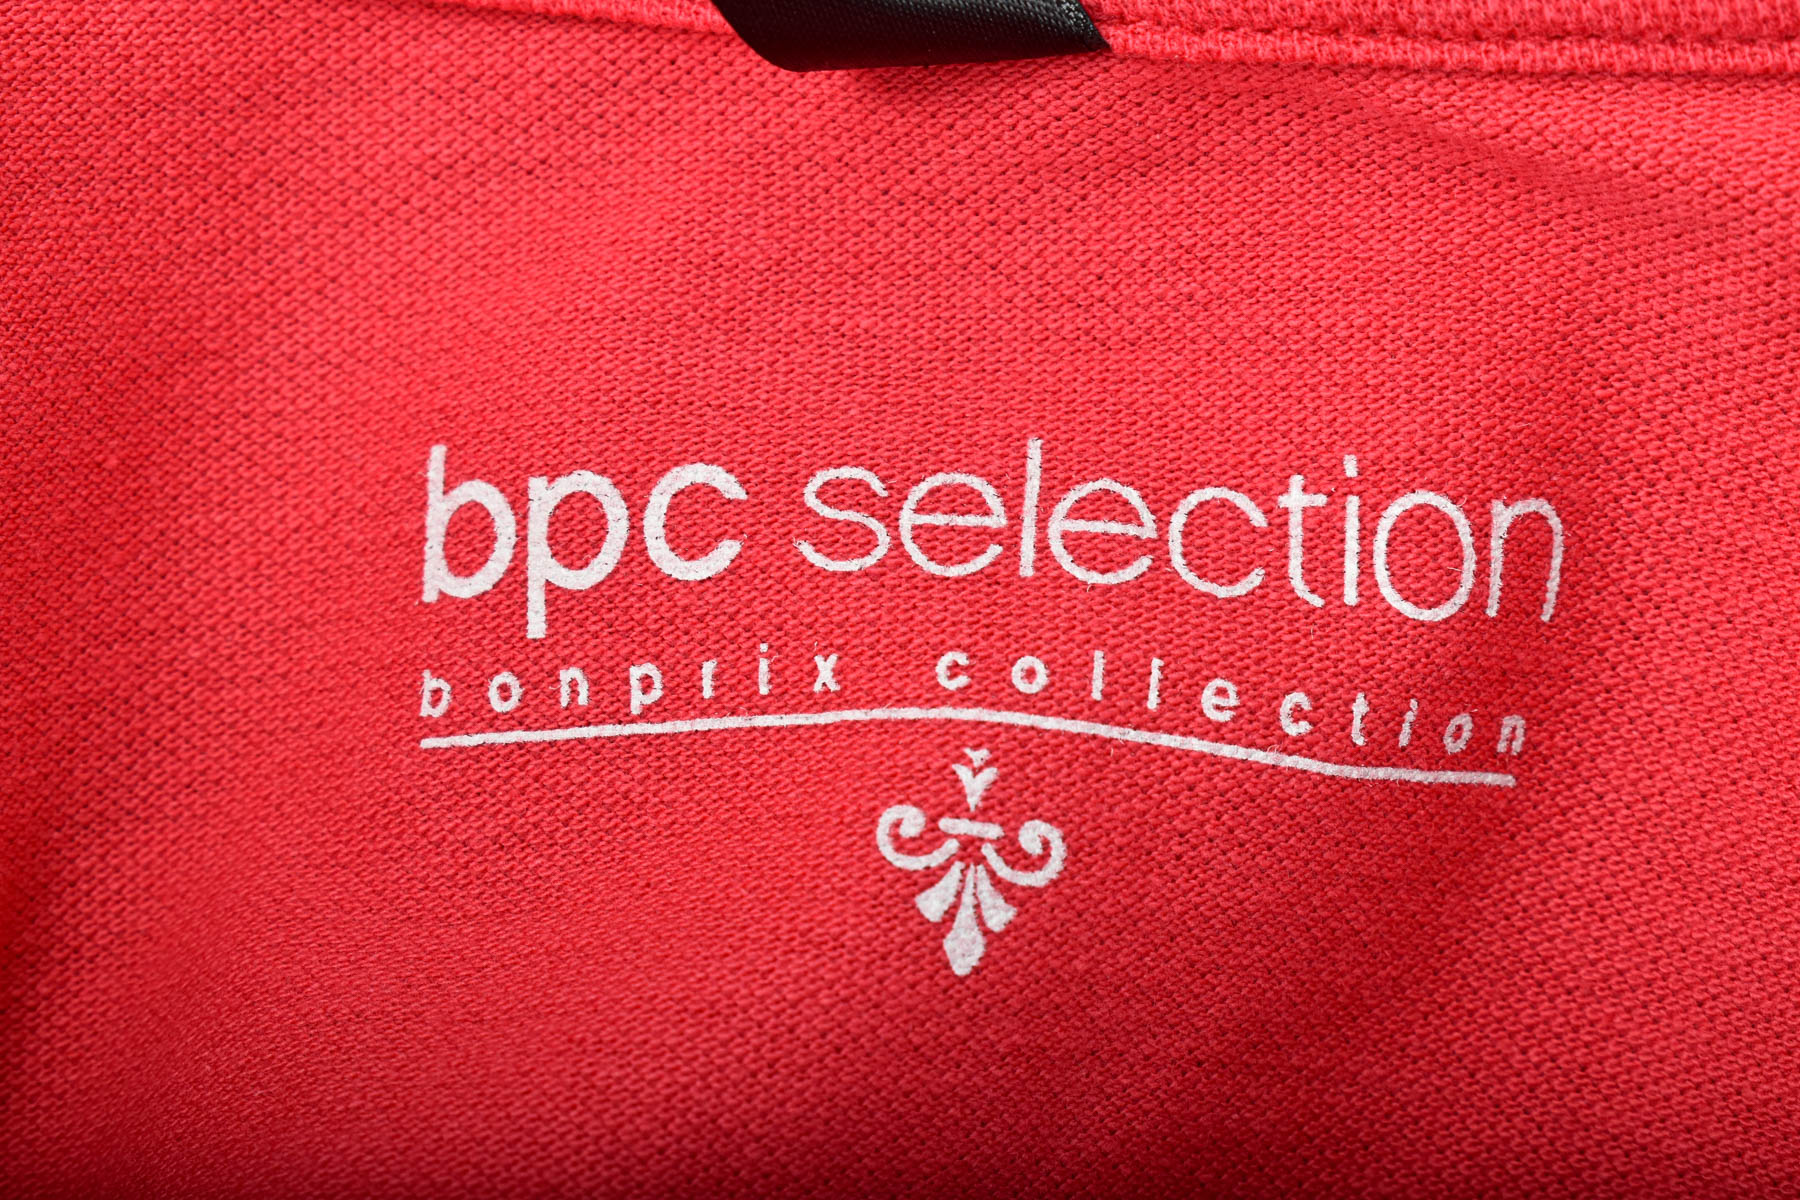 Koszulka damska - Bpc selection bonprix collection - 2